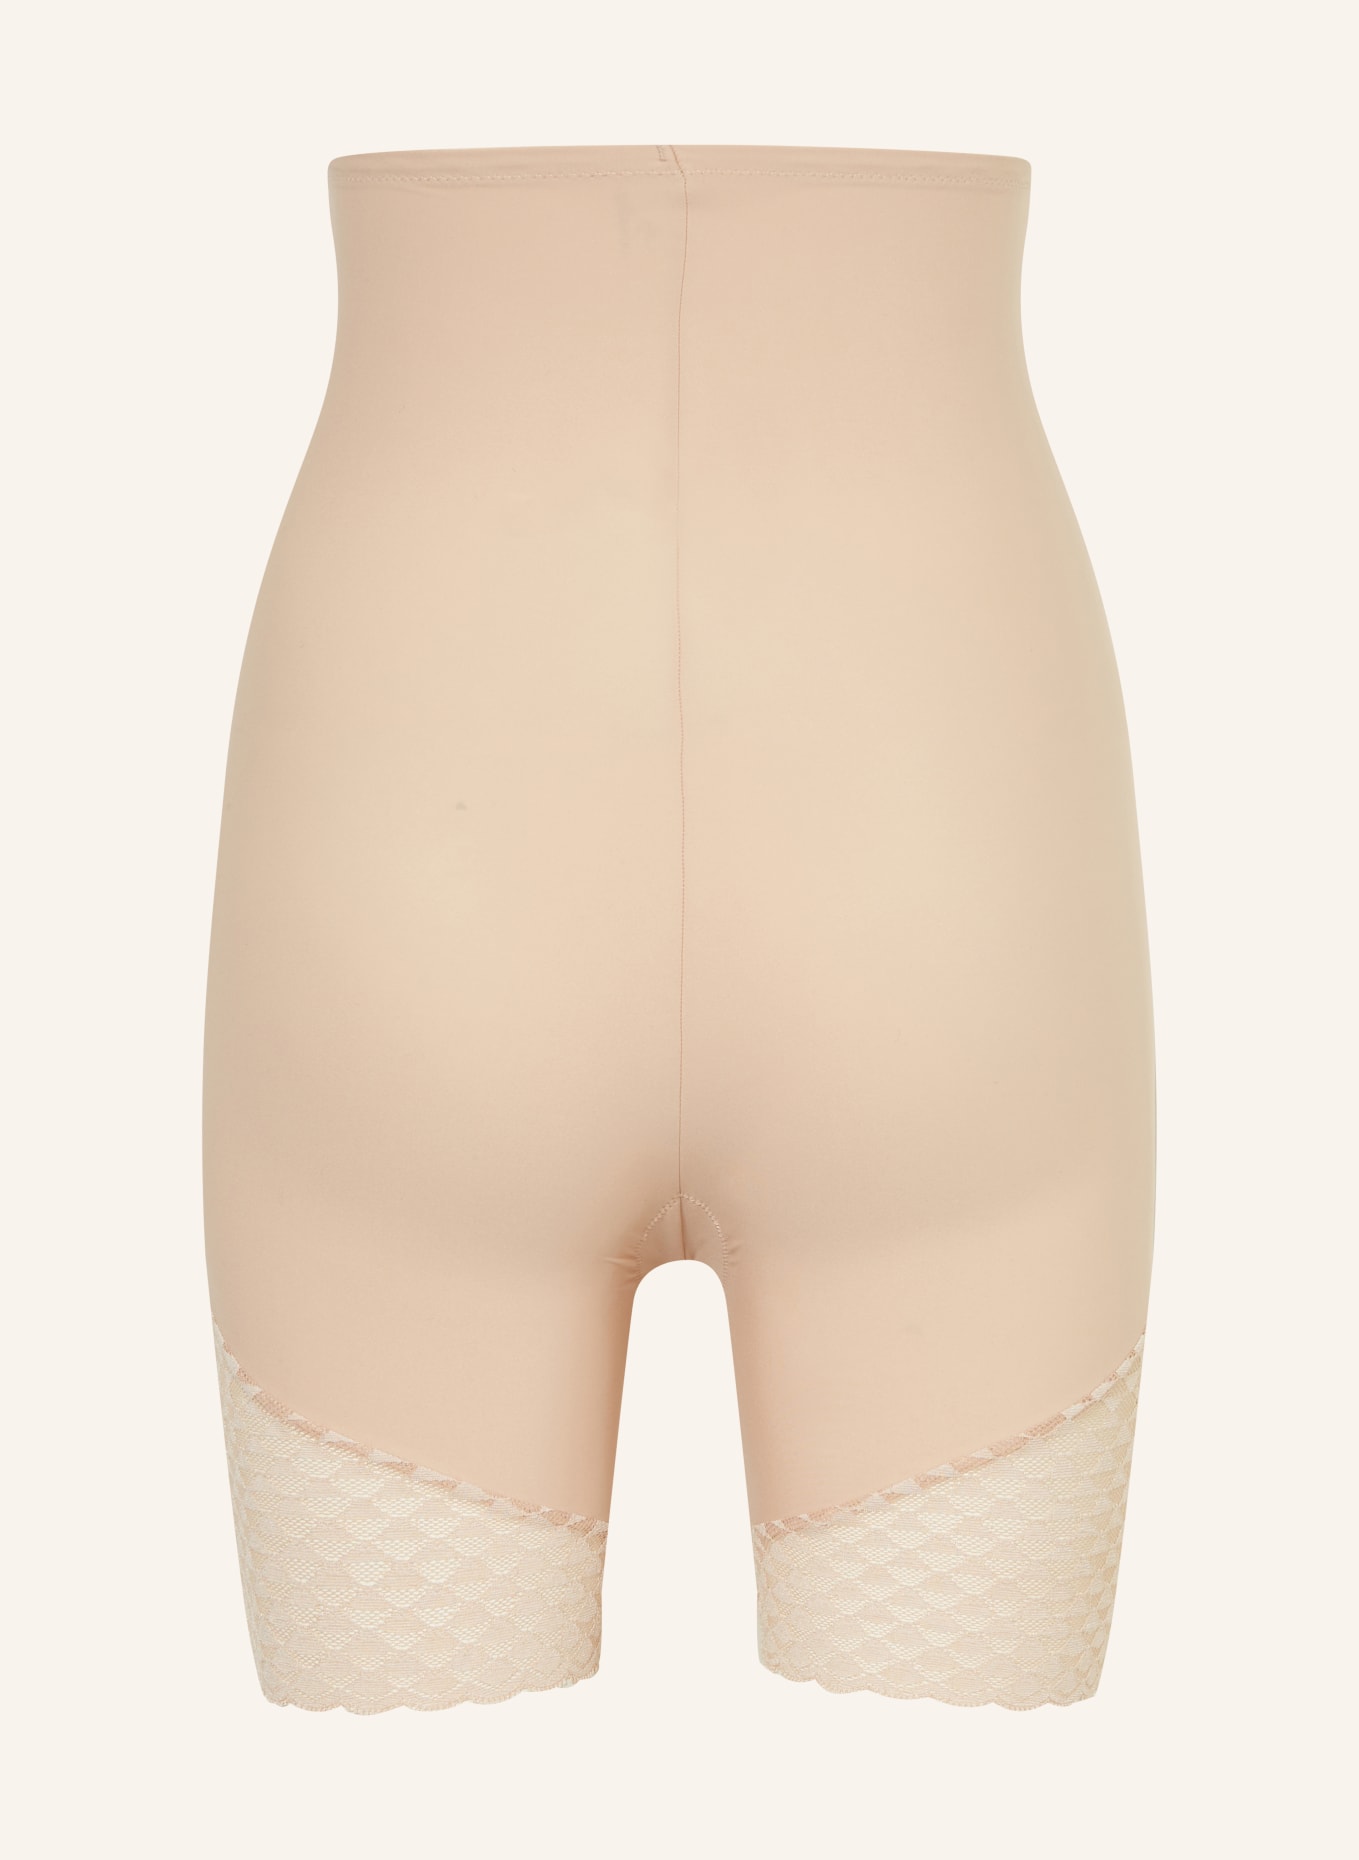 SIMONE PÉRÈLE Shaping shorts SUBTILE, Color: NUDE (Image 2)